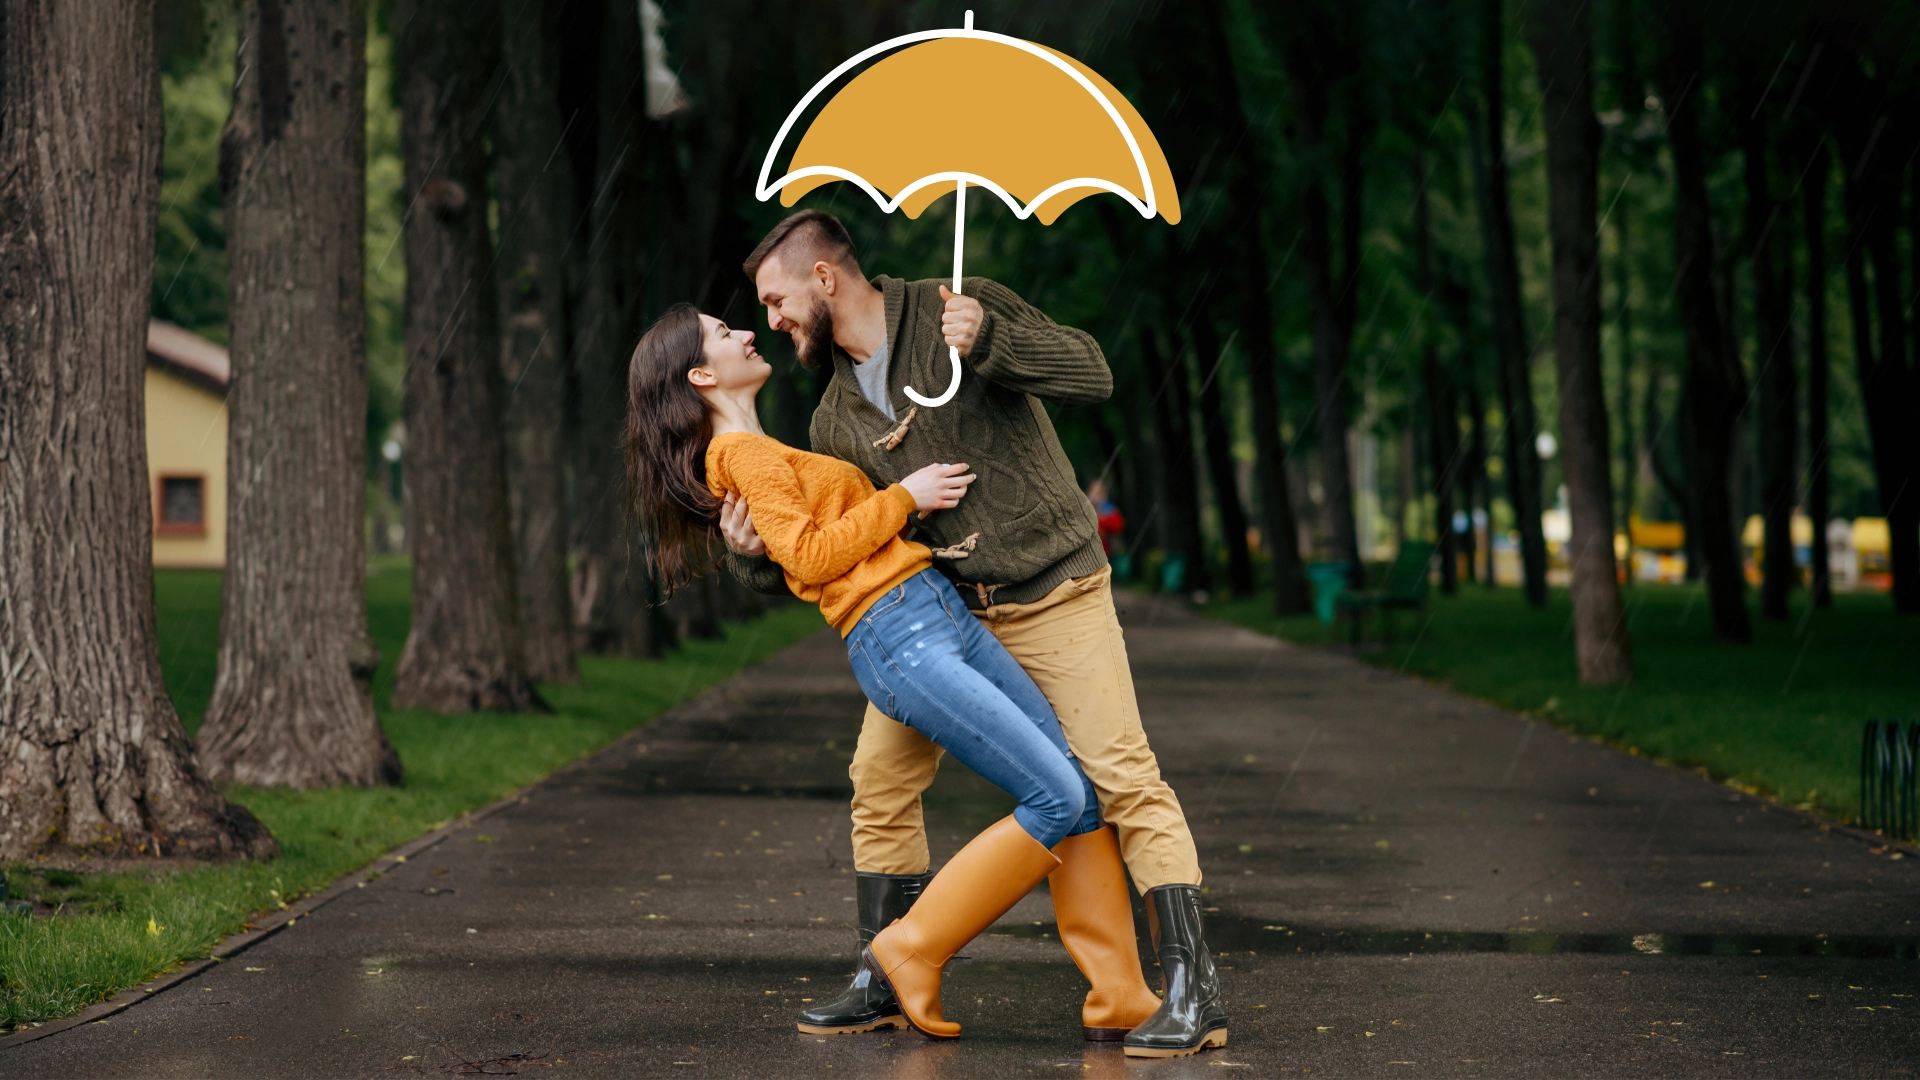 Zwei Personen mit einem Regenschirm, der die Bestattungsvorsorge symbolisiert